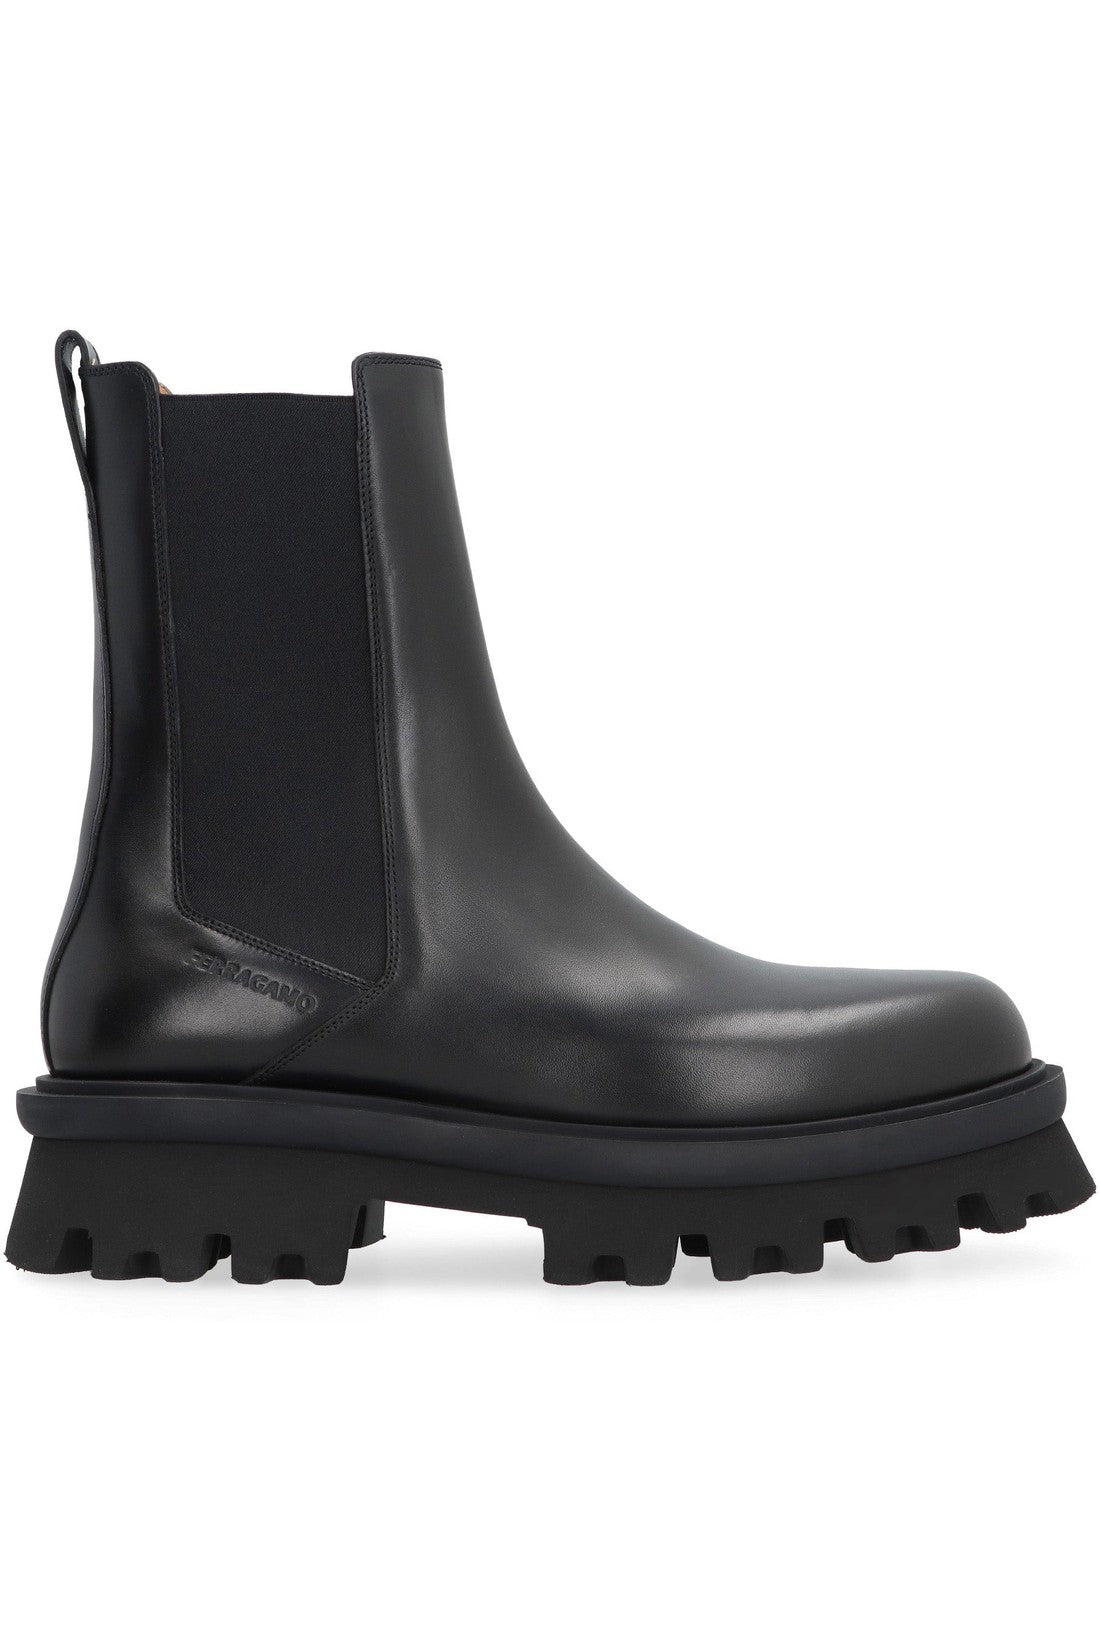 FERRAGAMO-OUTLET-SALE-Leather Chelsea boots-ARCHIVIST